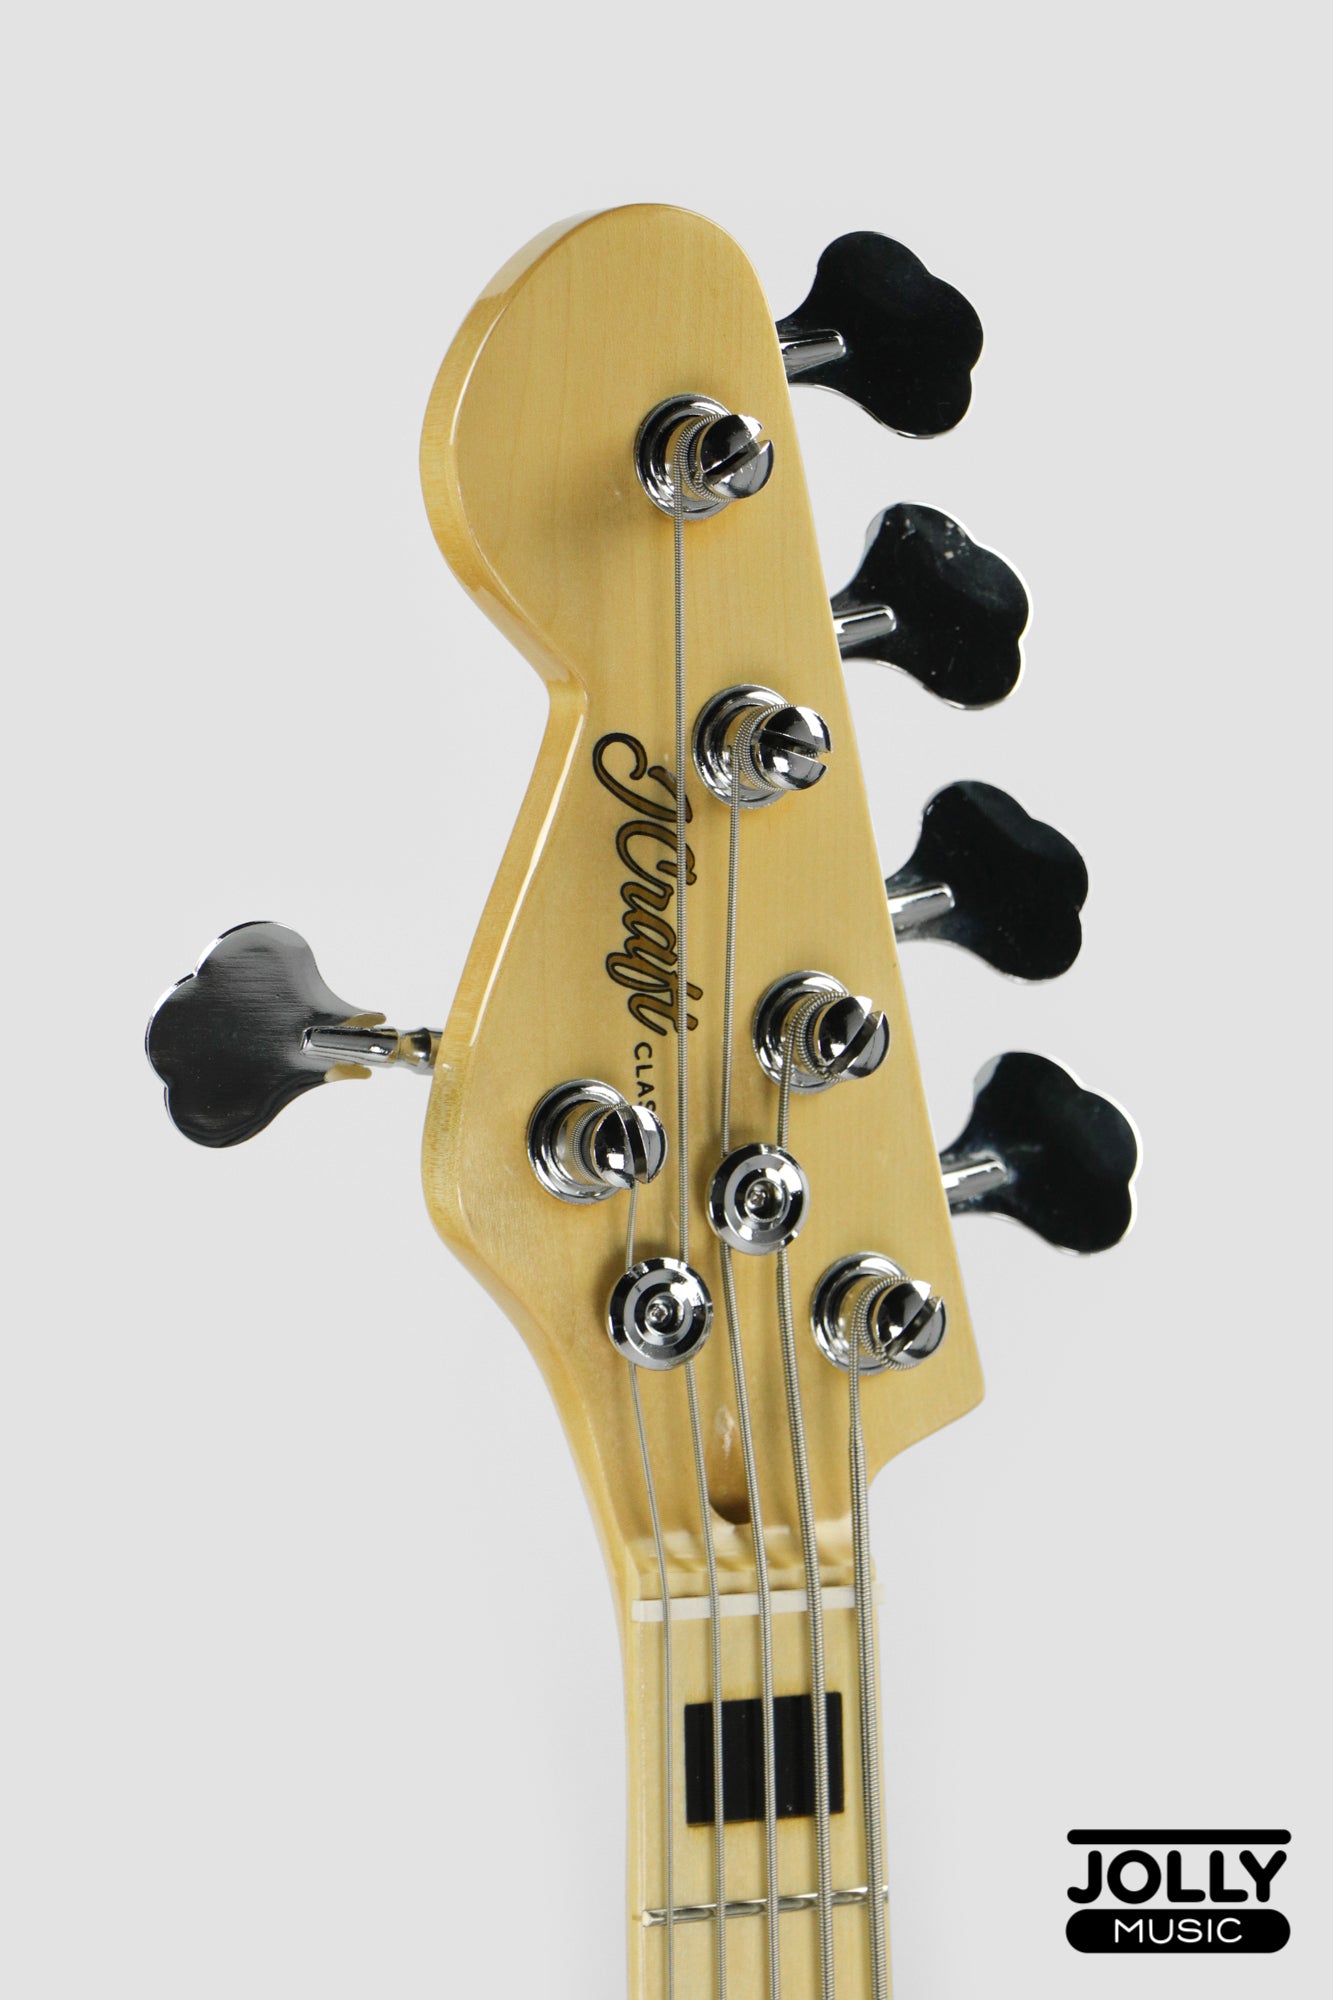 JCraft JB-1 Left Handed J-Offset 5-String Bass Guitar with Gigbag - Black